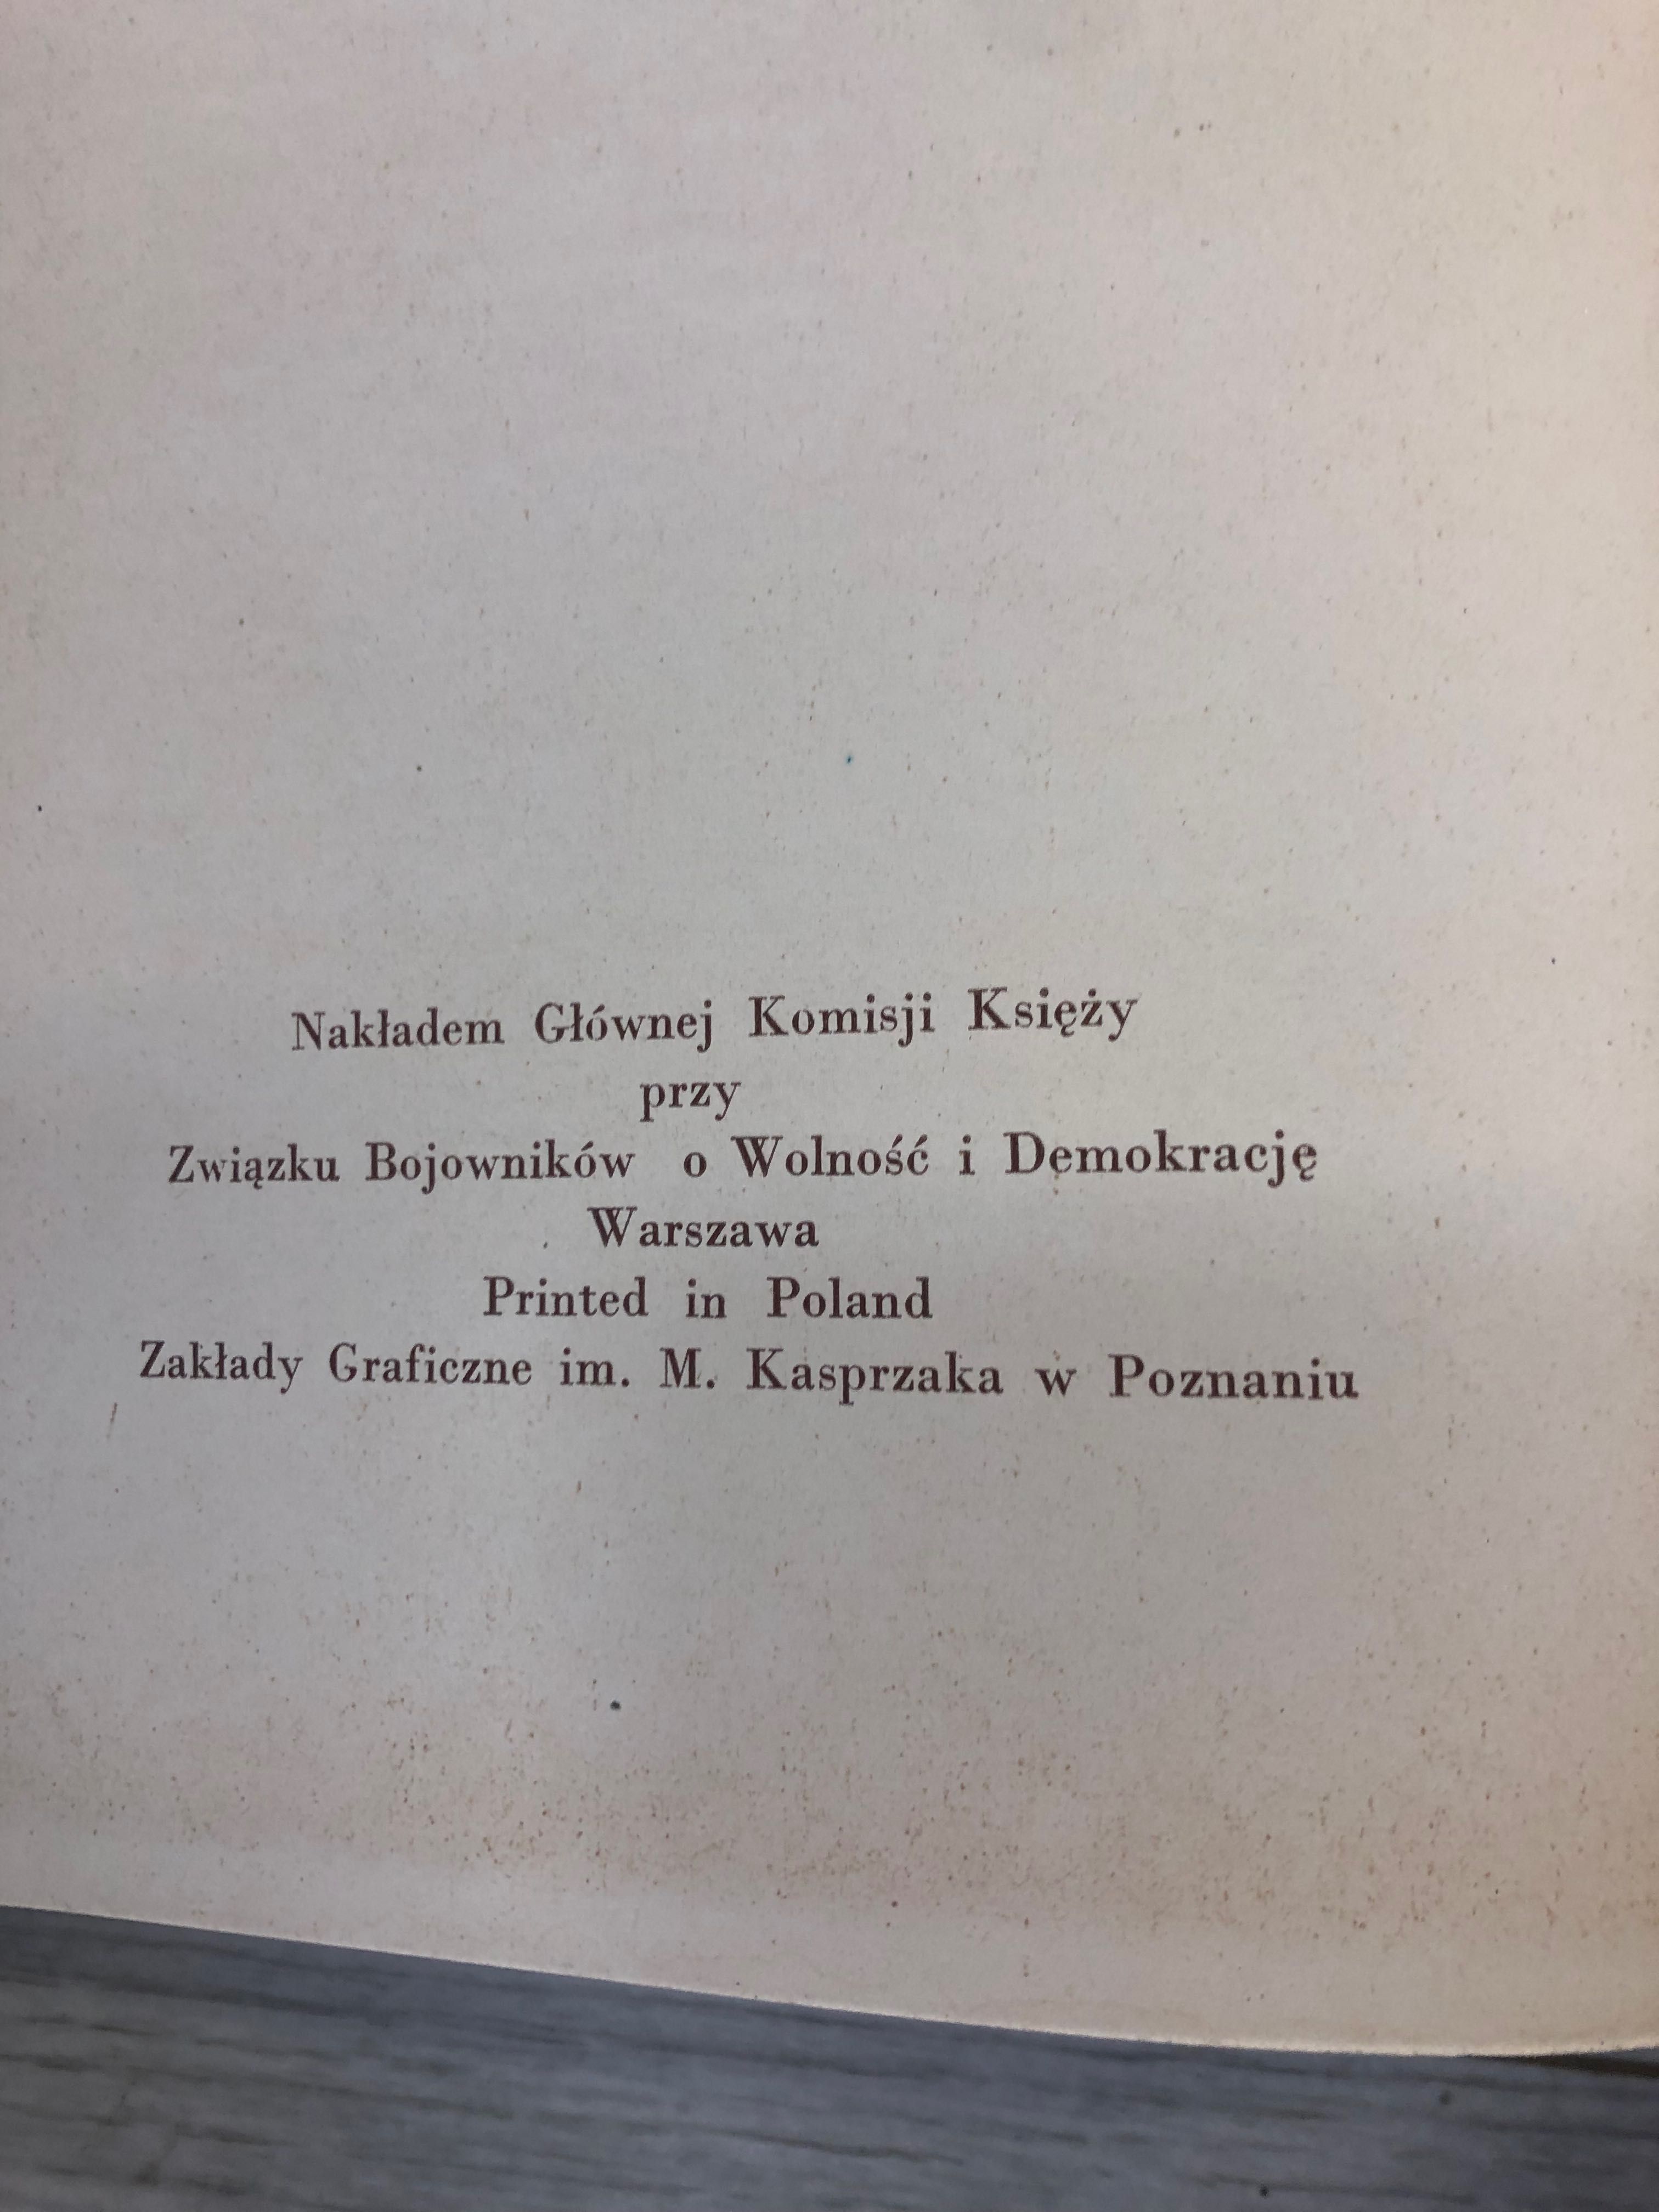 Album książka z okresu PRL kościół katolicki w Polsce ludowej